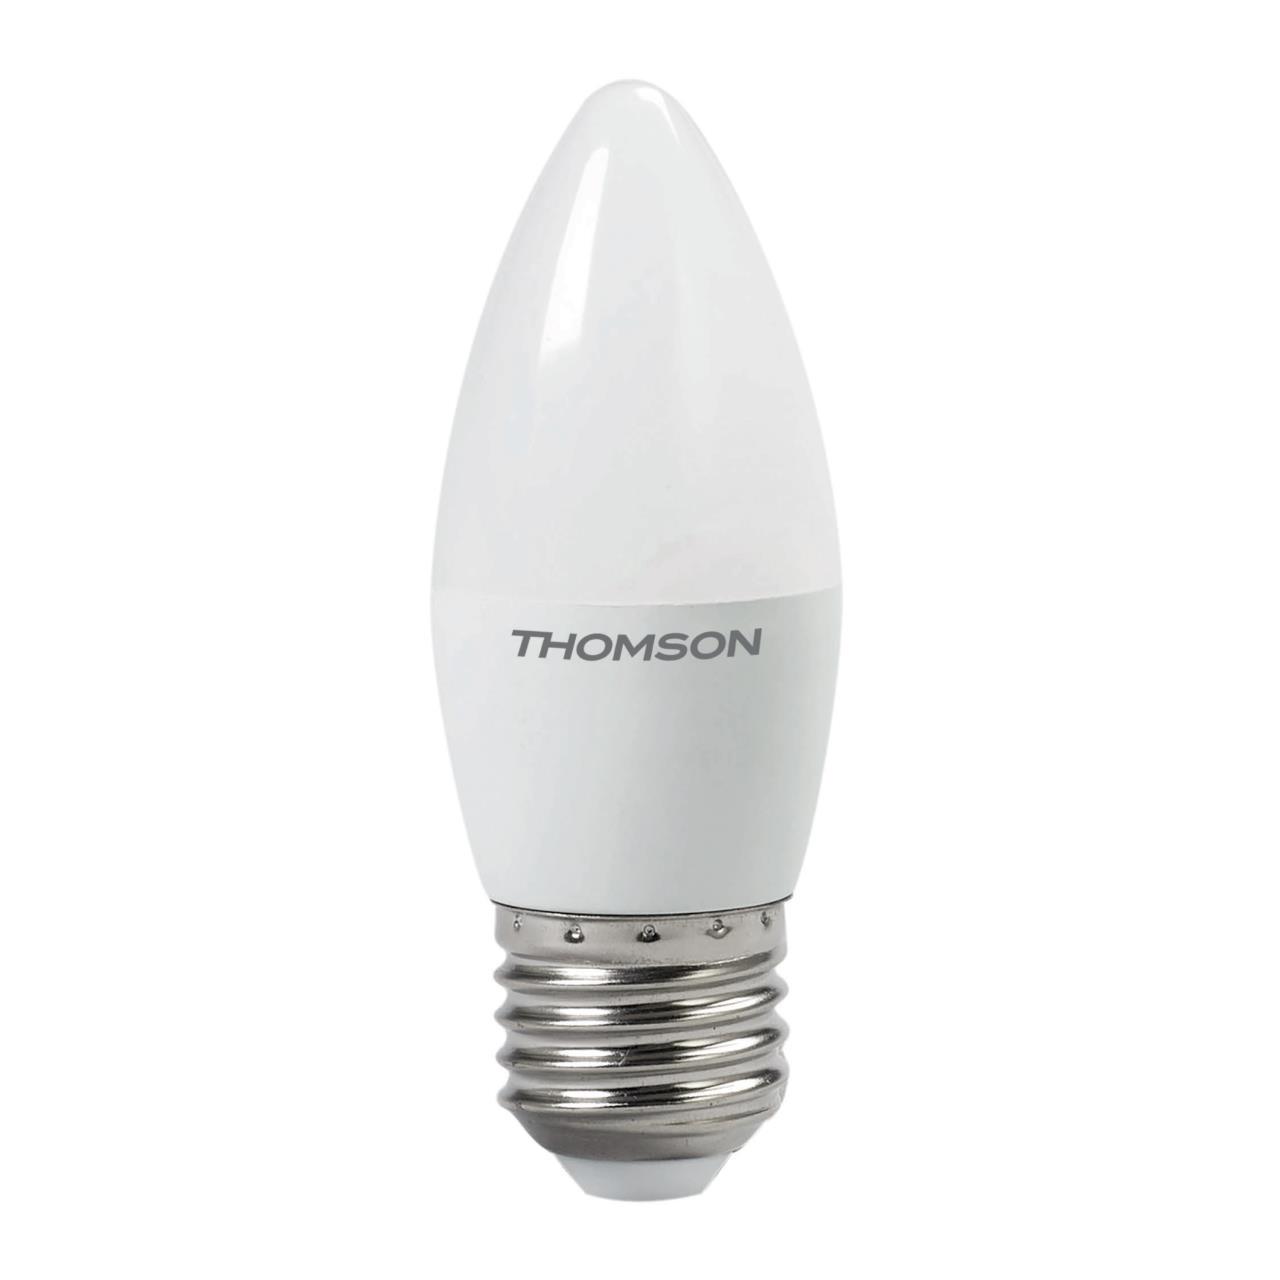 91252854 Лампа светодиодная TH-B2022 E27 54 В 8 Вт свеча матовая 670 Лм нейтральный белый свет STLM-0522388 THOMSON